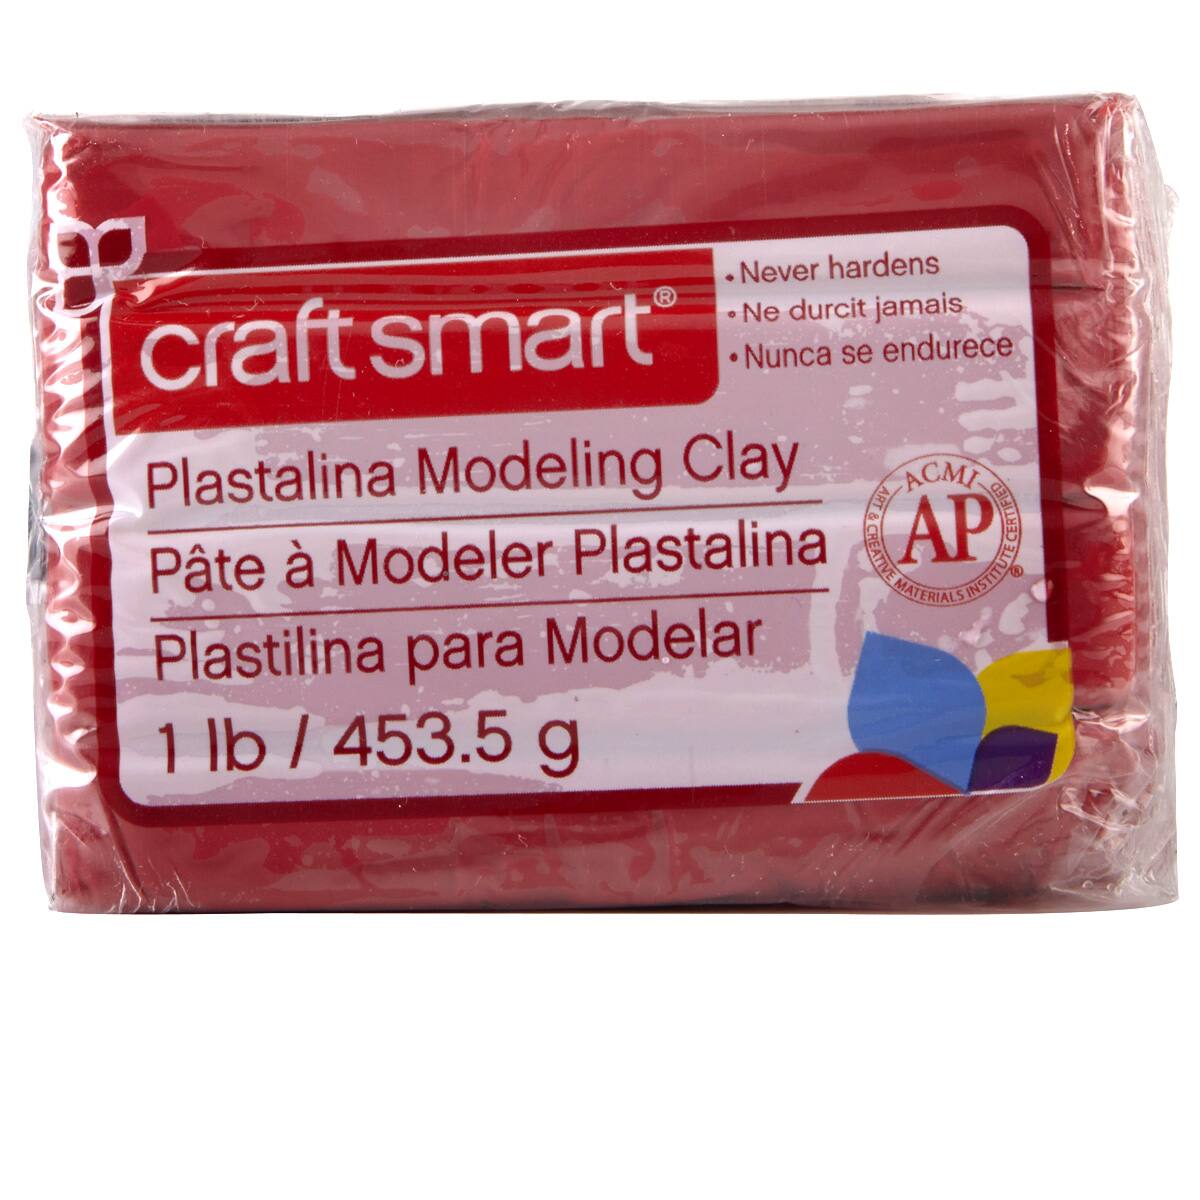 how to harden plastilina modeling clay